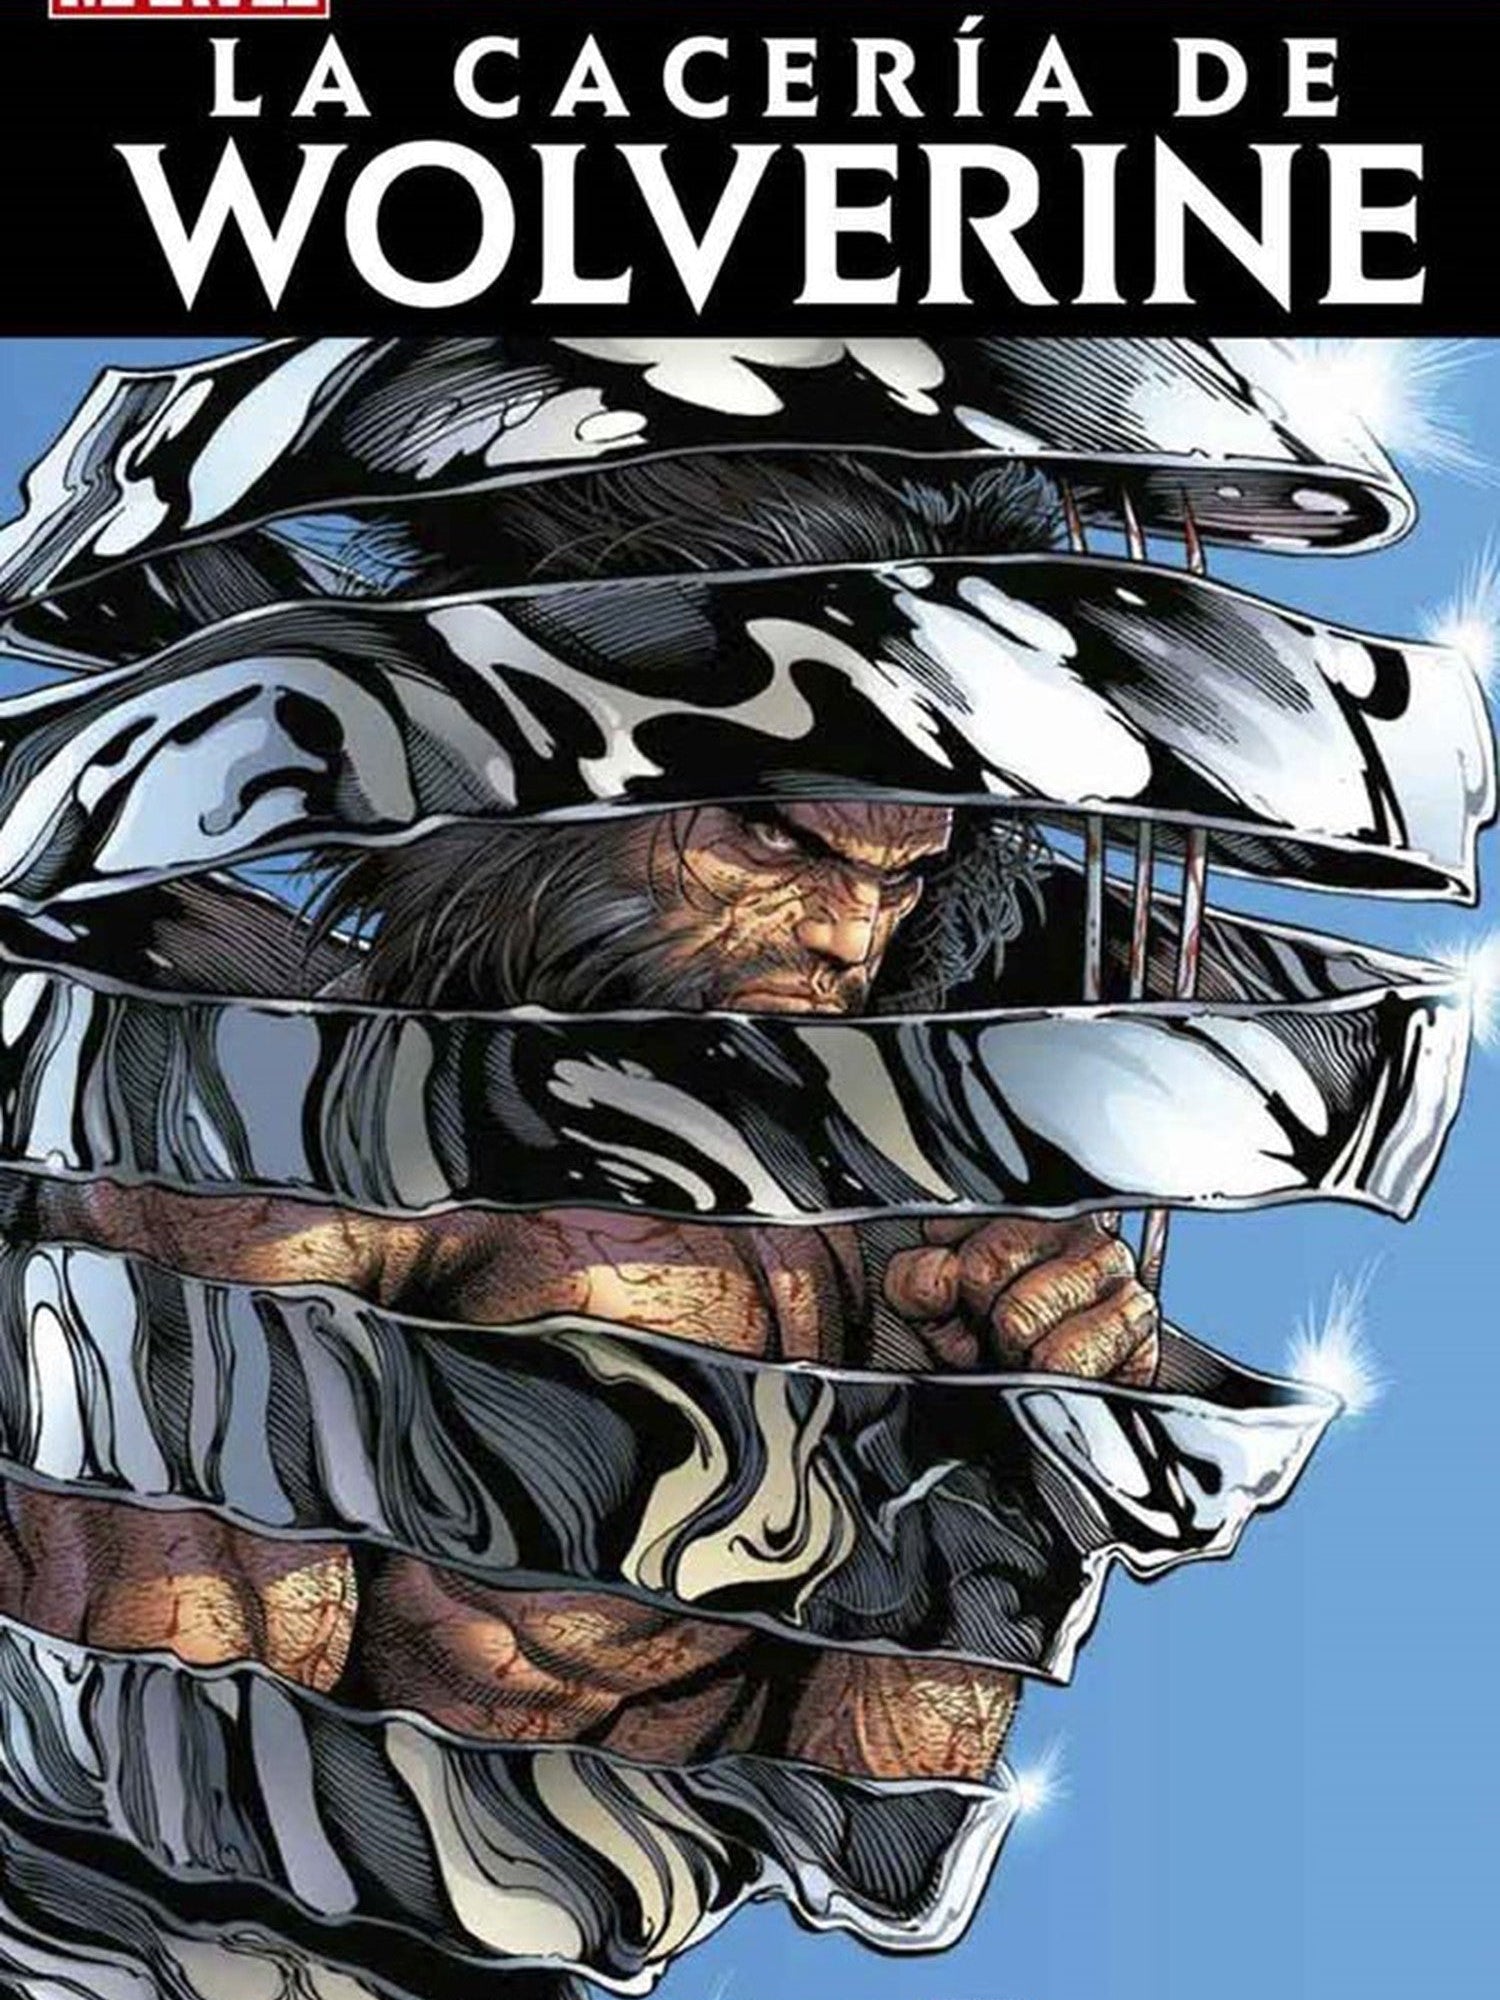 La Cacería de Wolverine OVNI Press ENcuadrocomics